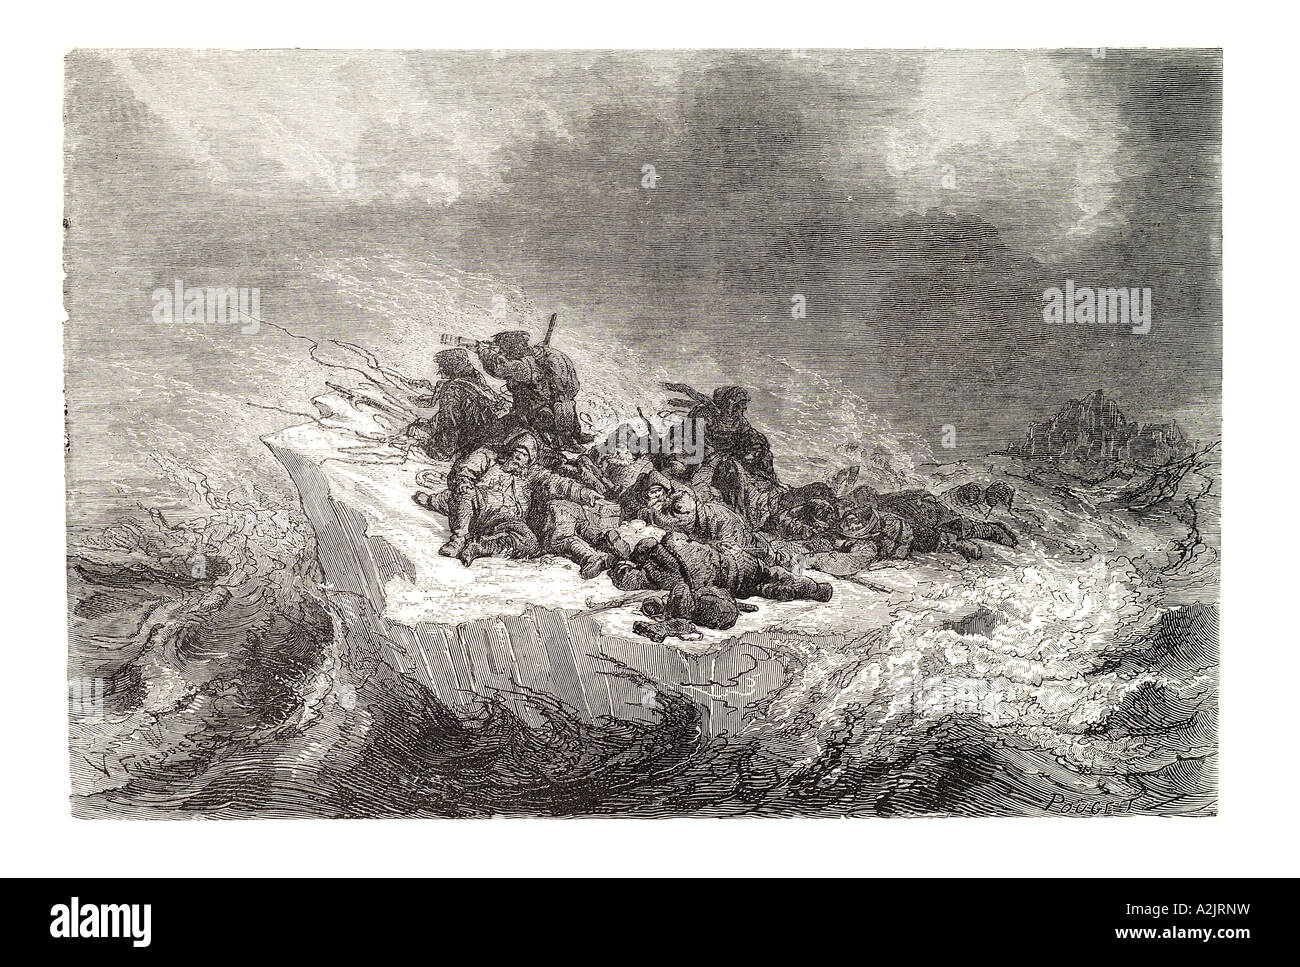 Expédition polaire de l'équipage naufragé ice berg deperate Koldeway floe arctique risque de tempête a survécu à 1870 peau de fourrure à flot échoués expl Banque D'Images